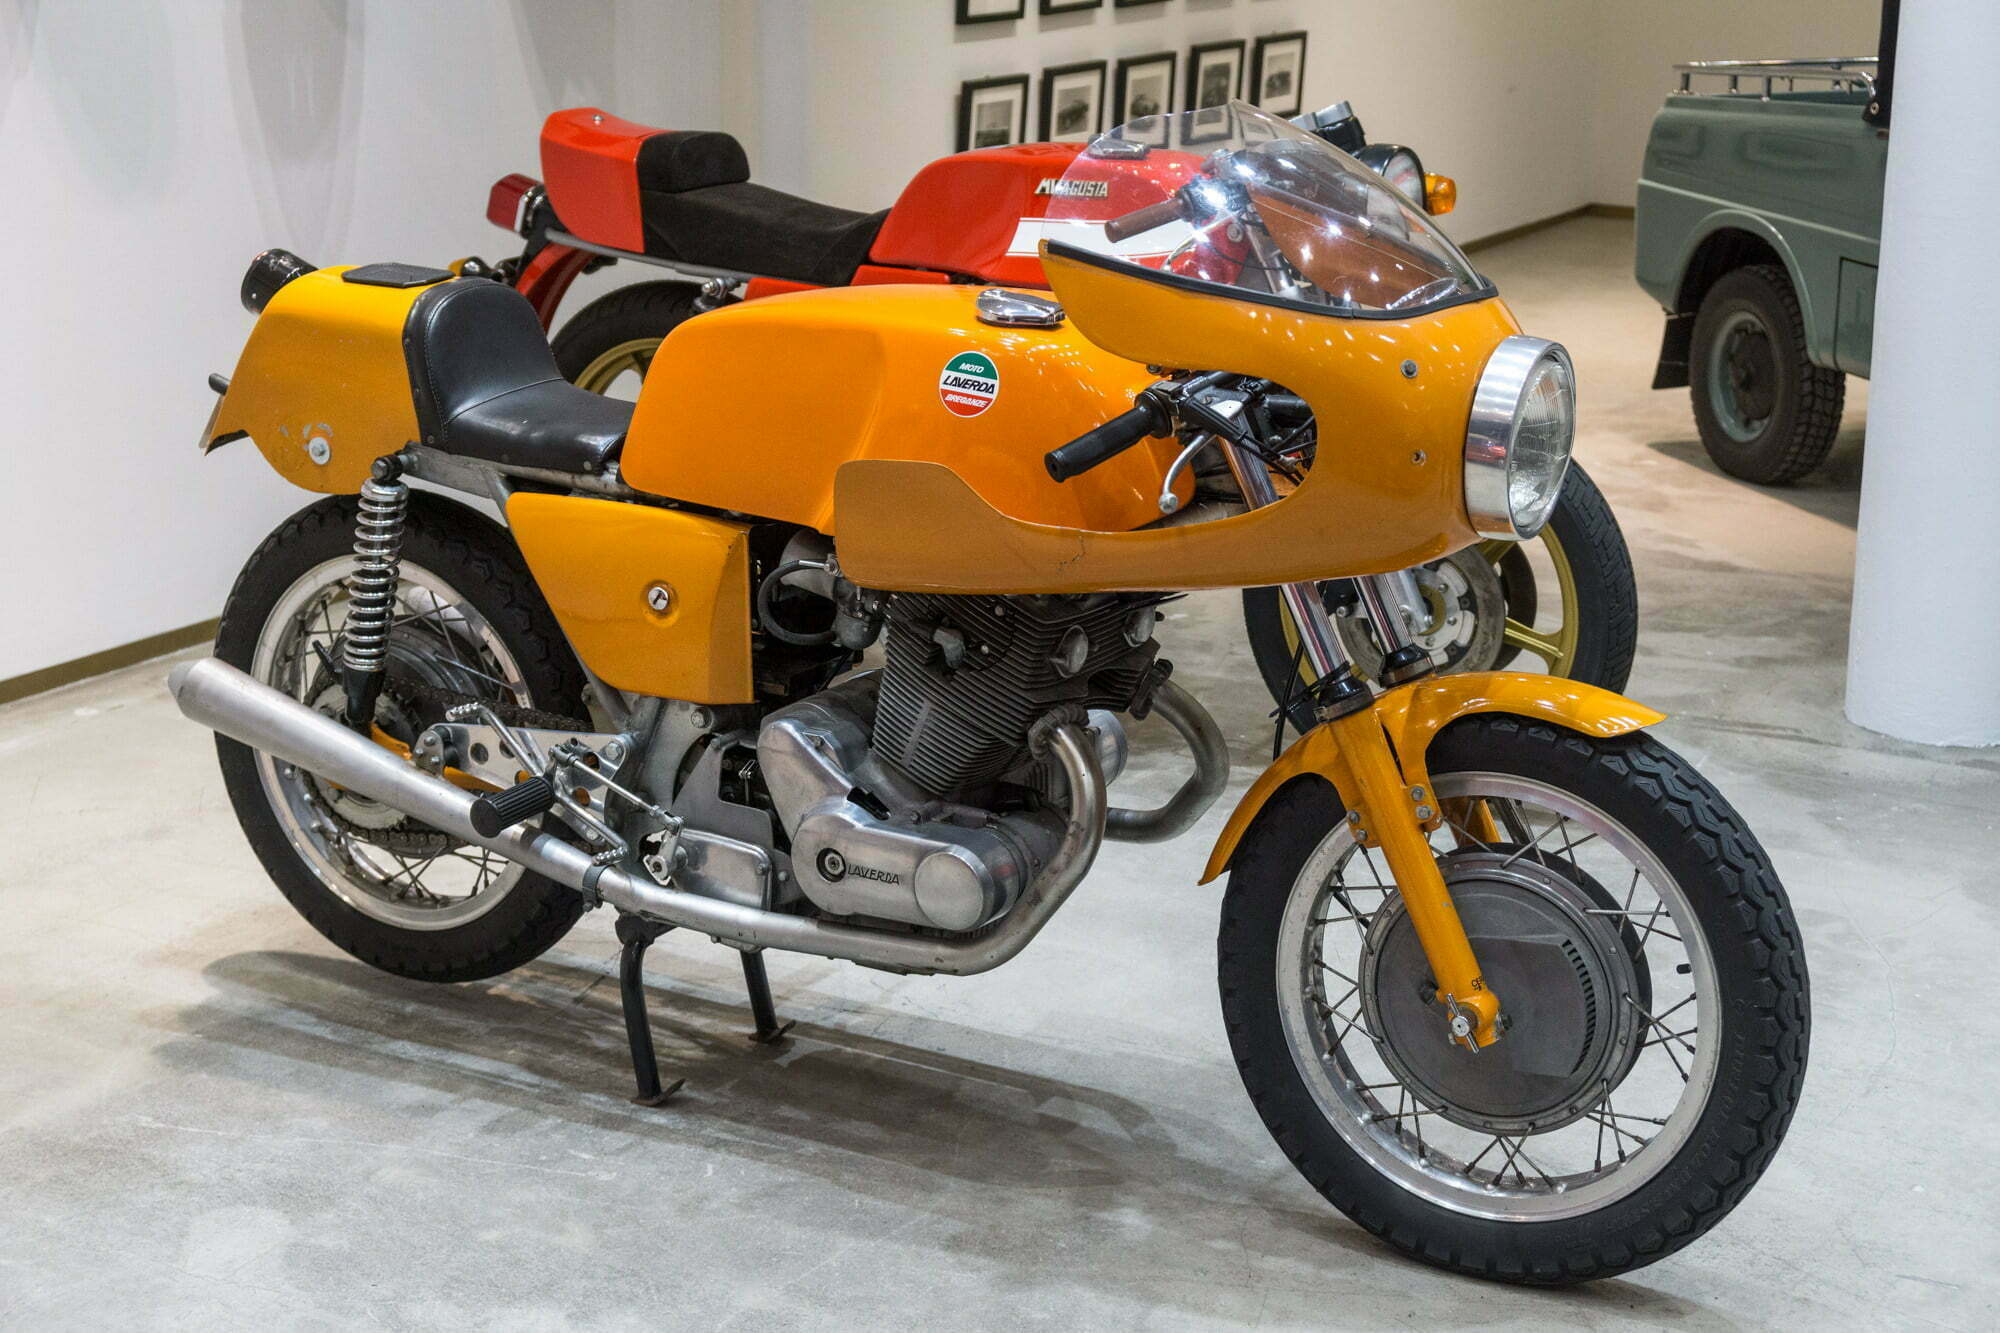 Motorcycle, Stuart Parr Collection